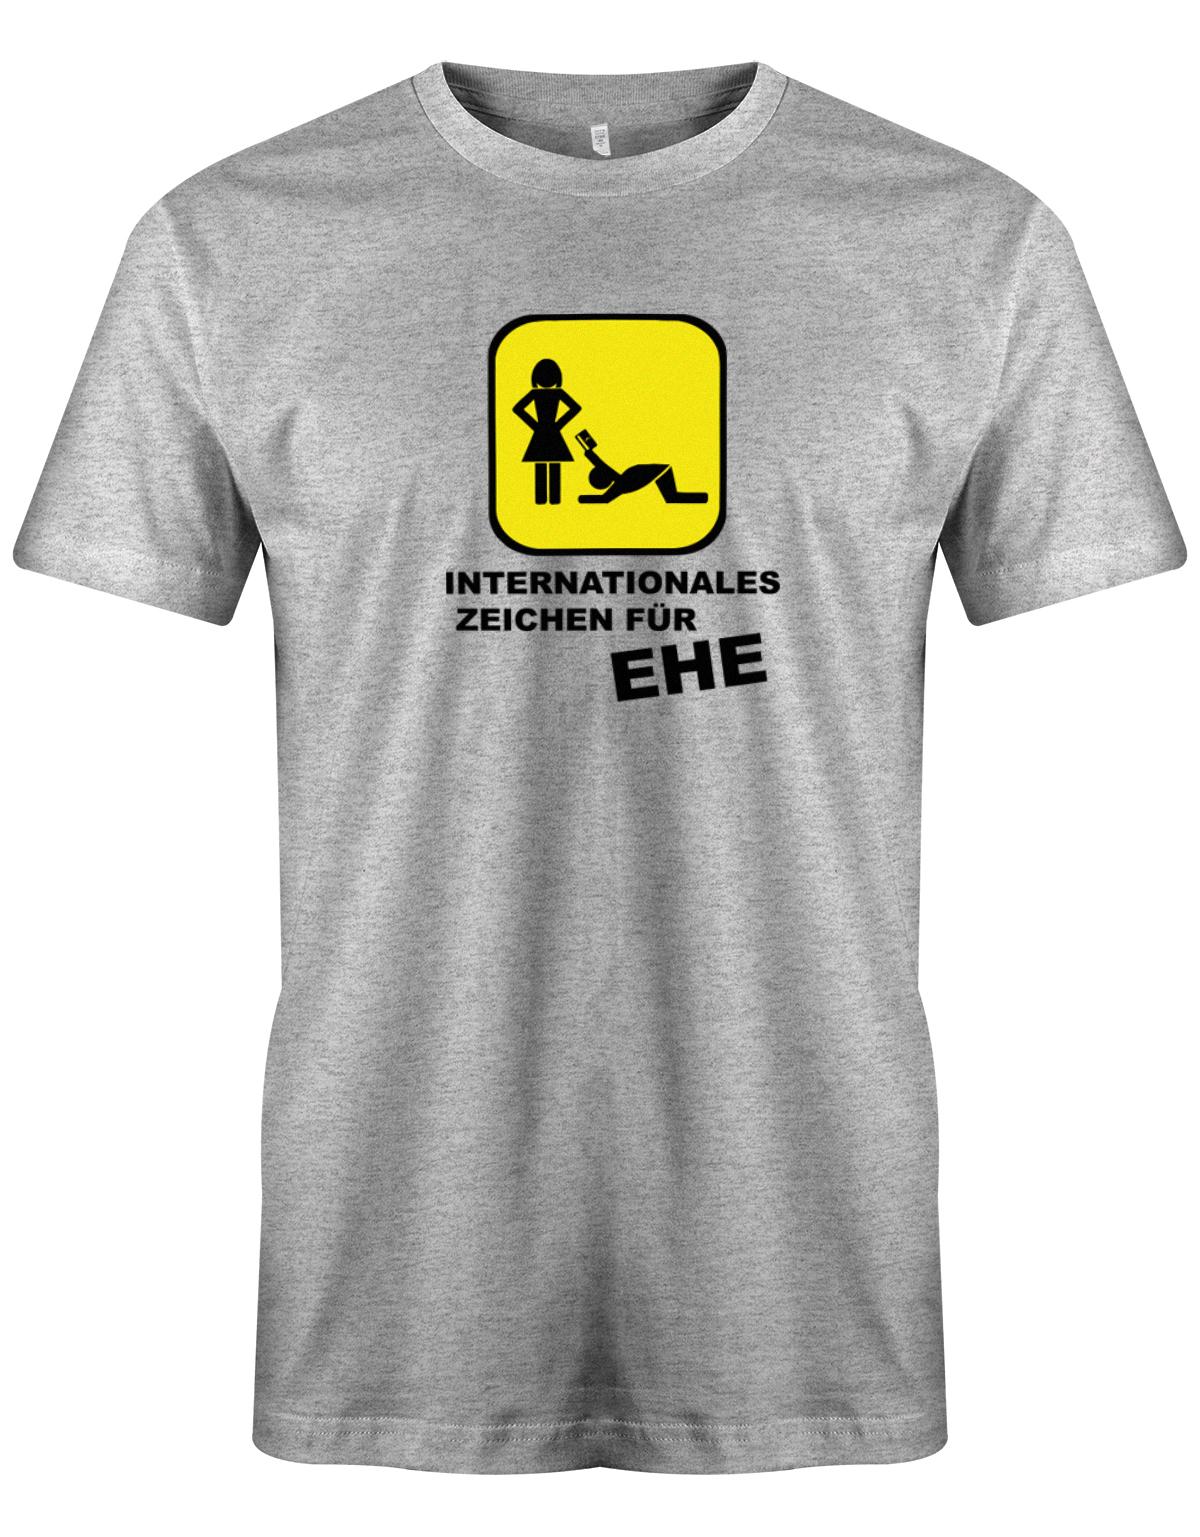 Internationales-zeichen-f-r-Ehe-Herren-Shirt-Grau